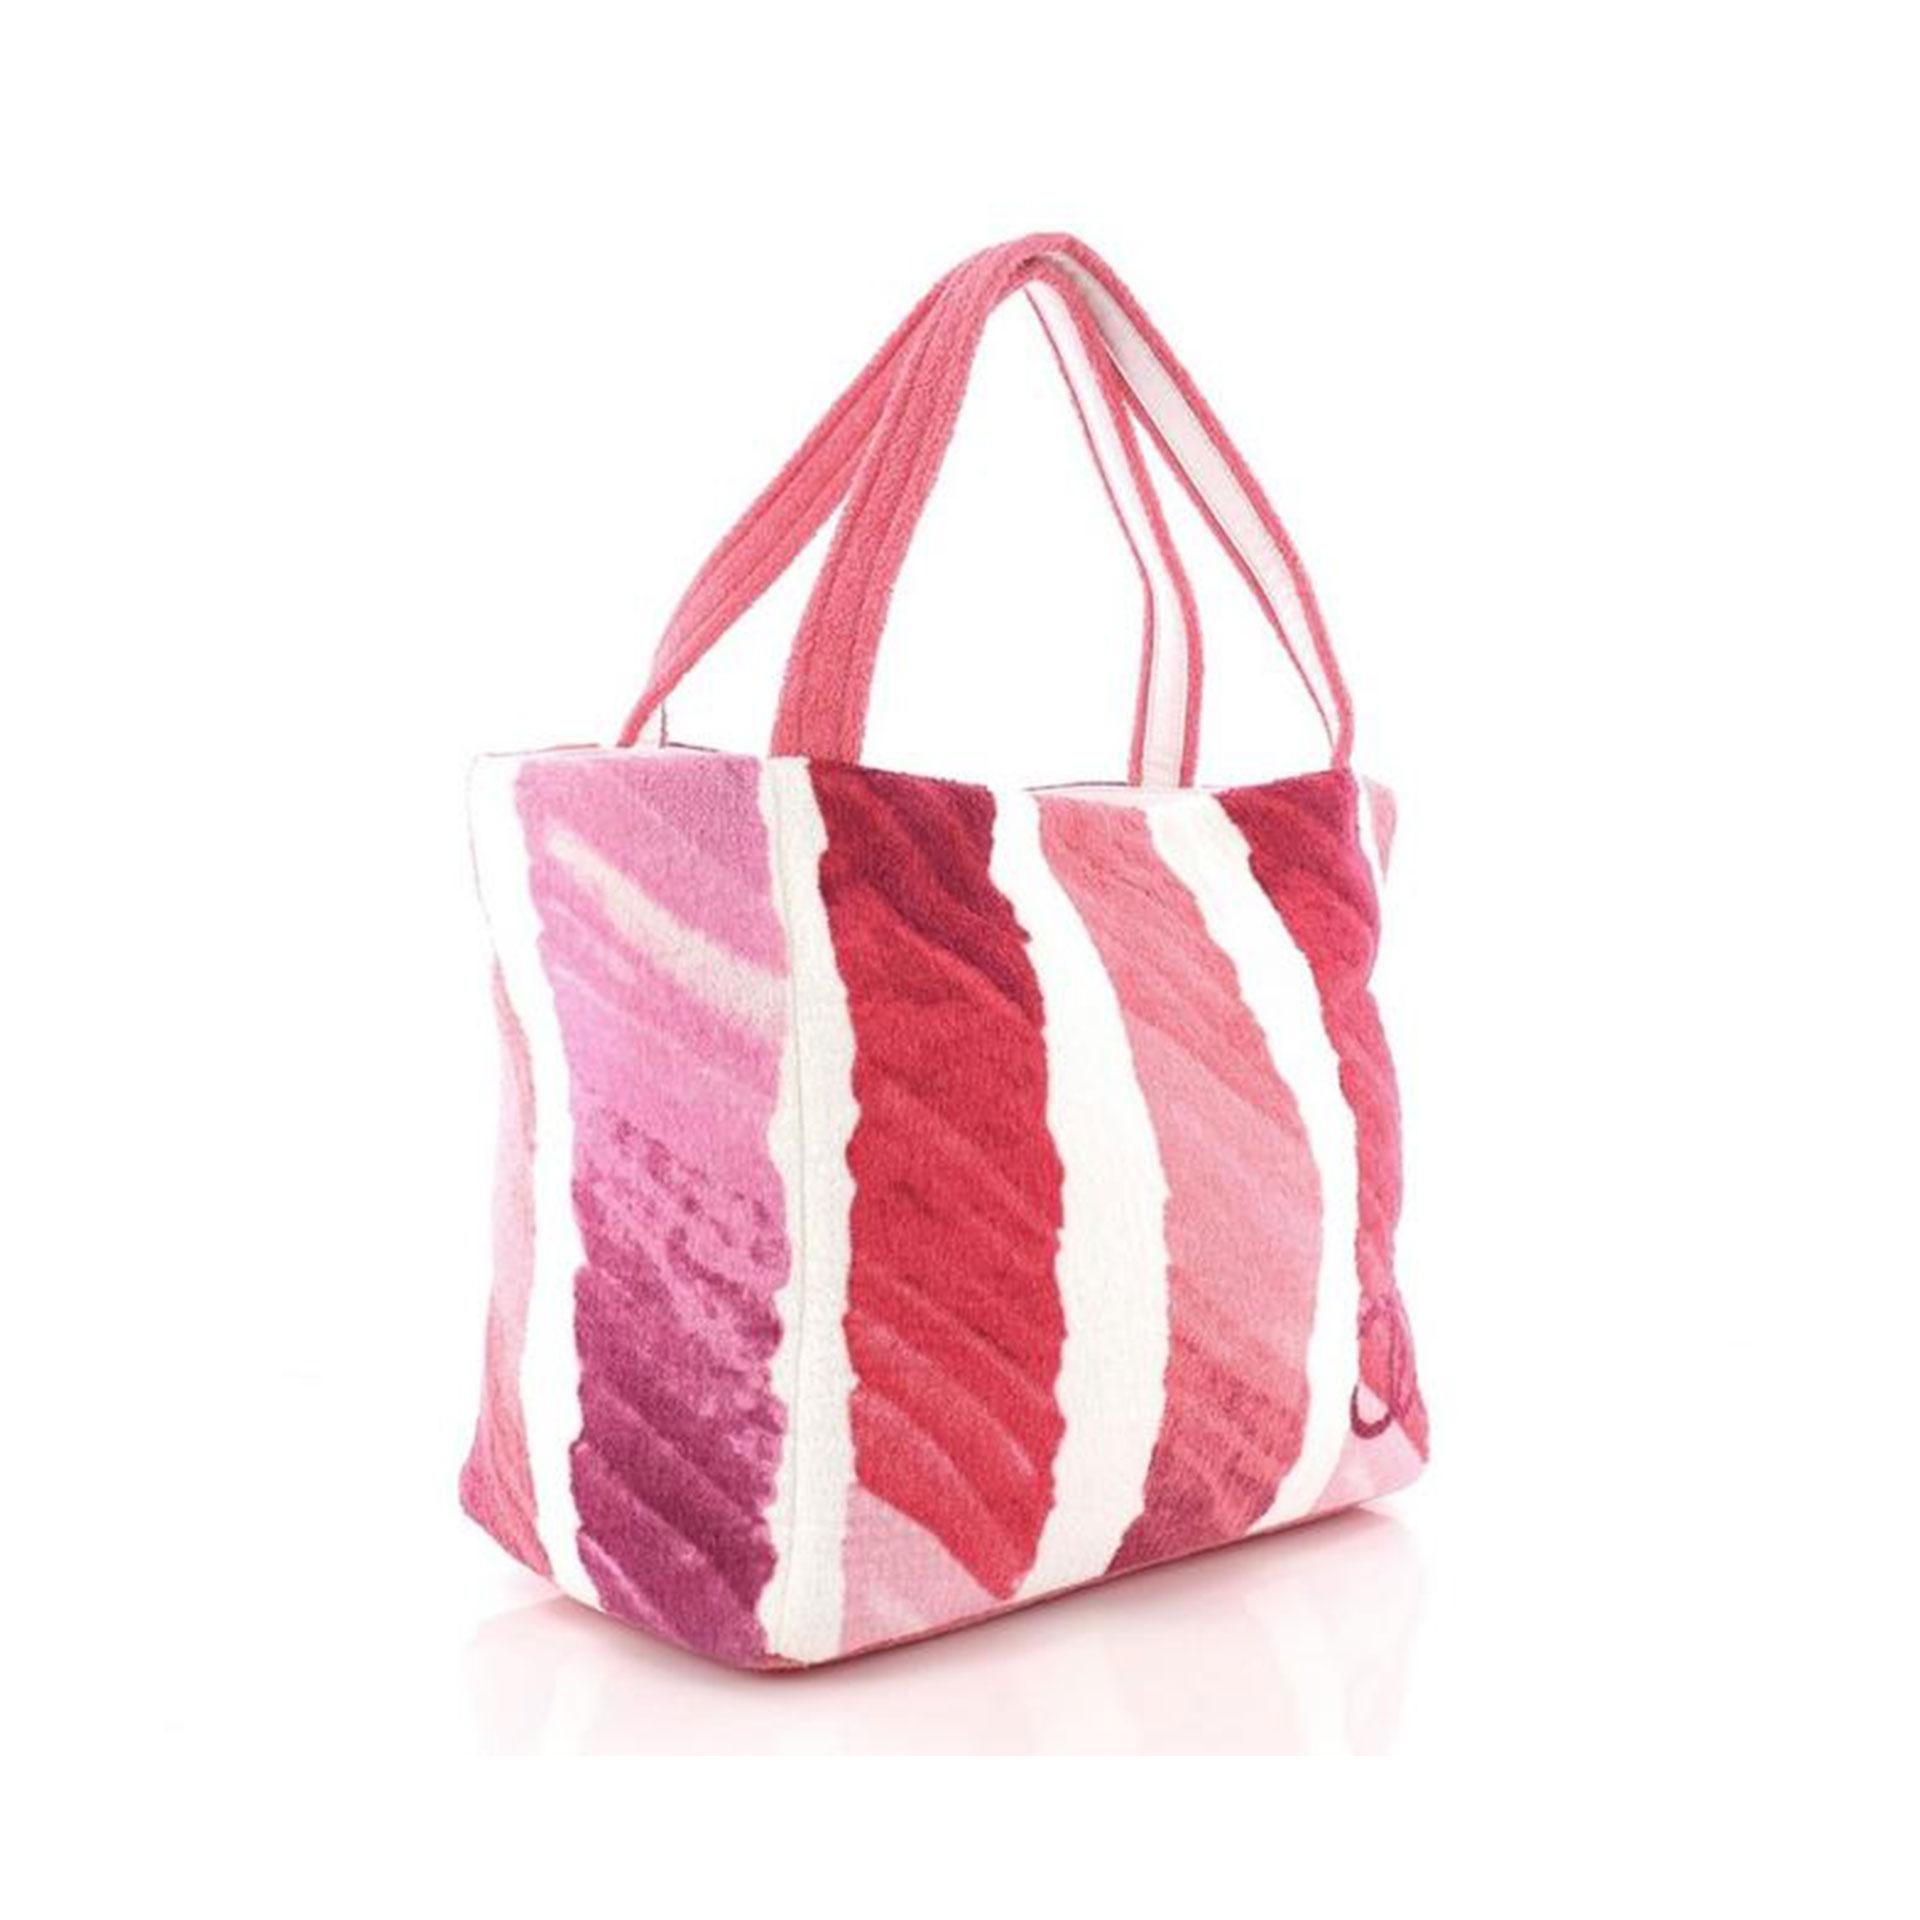 Ce Chanel CC Beach Tote Terry Cloth Medium, fabriqué en tissu éponge rose, est doté de deux poignées en tissu éponge, d'un logo CC imprimé et d'une quincaillerie argentée. Il s'ouvre sur un intérieur en tissu éponge rose avec des poches à